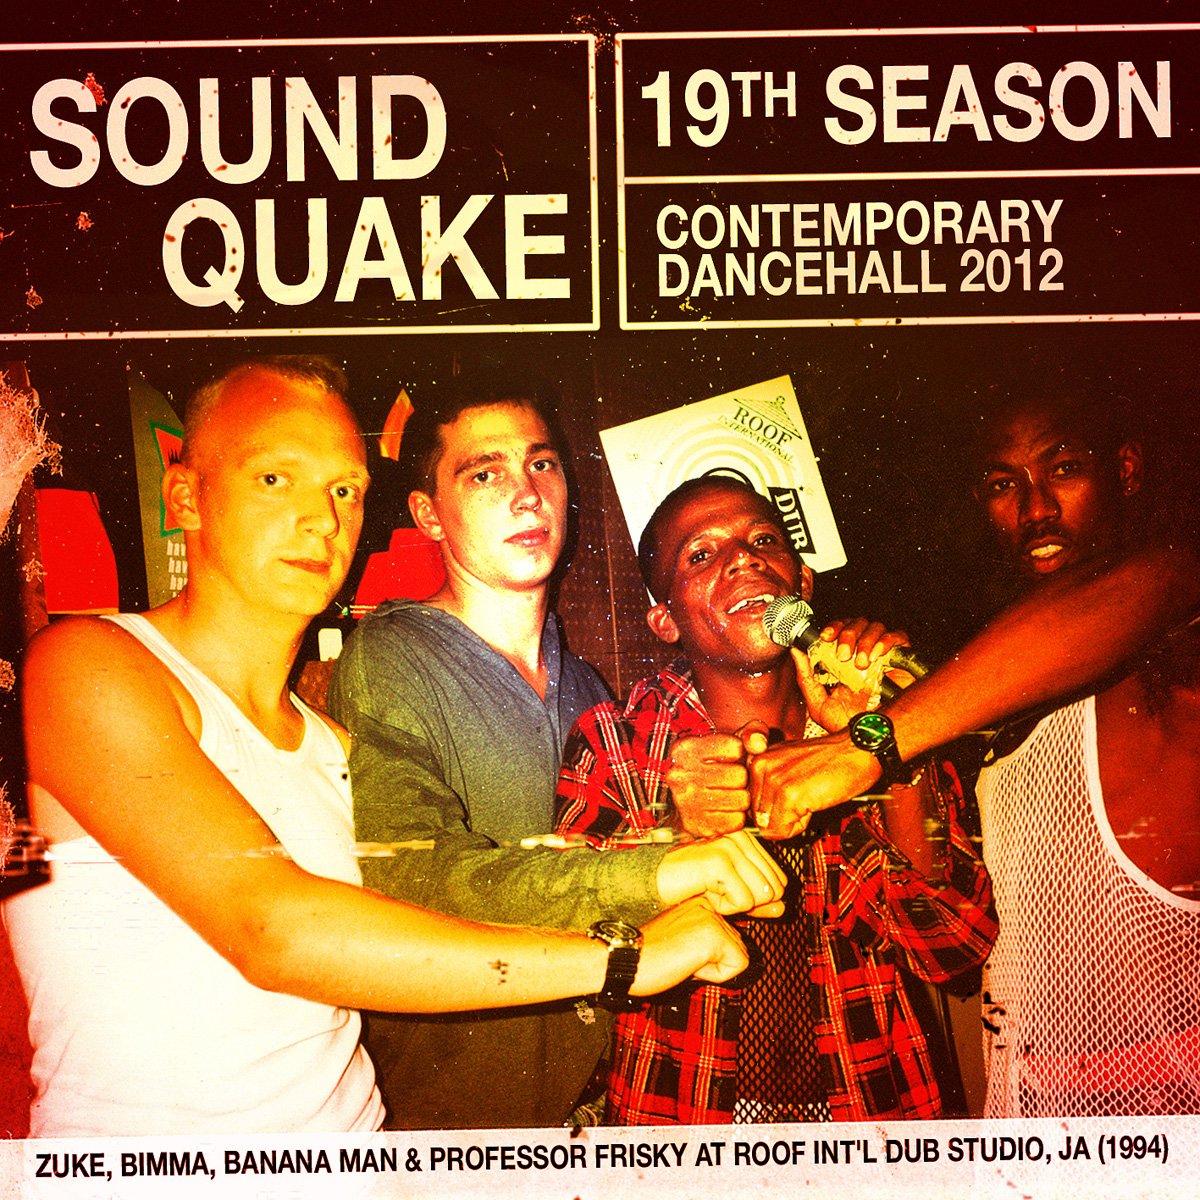 SOUND QUAKE- 19th SEASON - CONTEMPORARY DANCEHALL 2012 Artworks-000030112596-7ebzjr-original